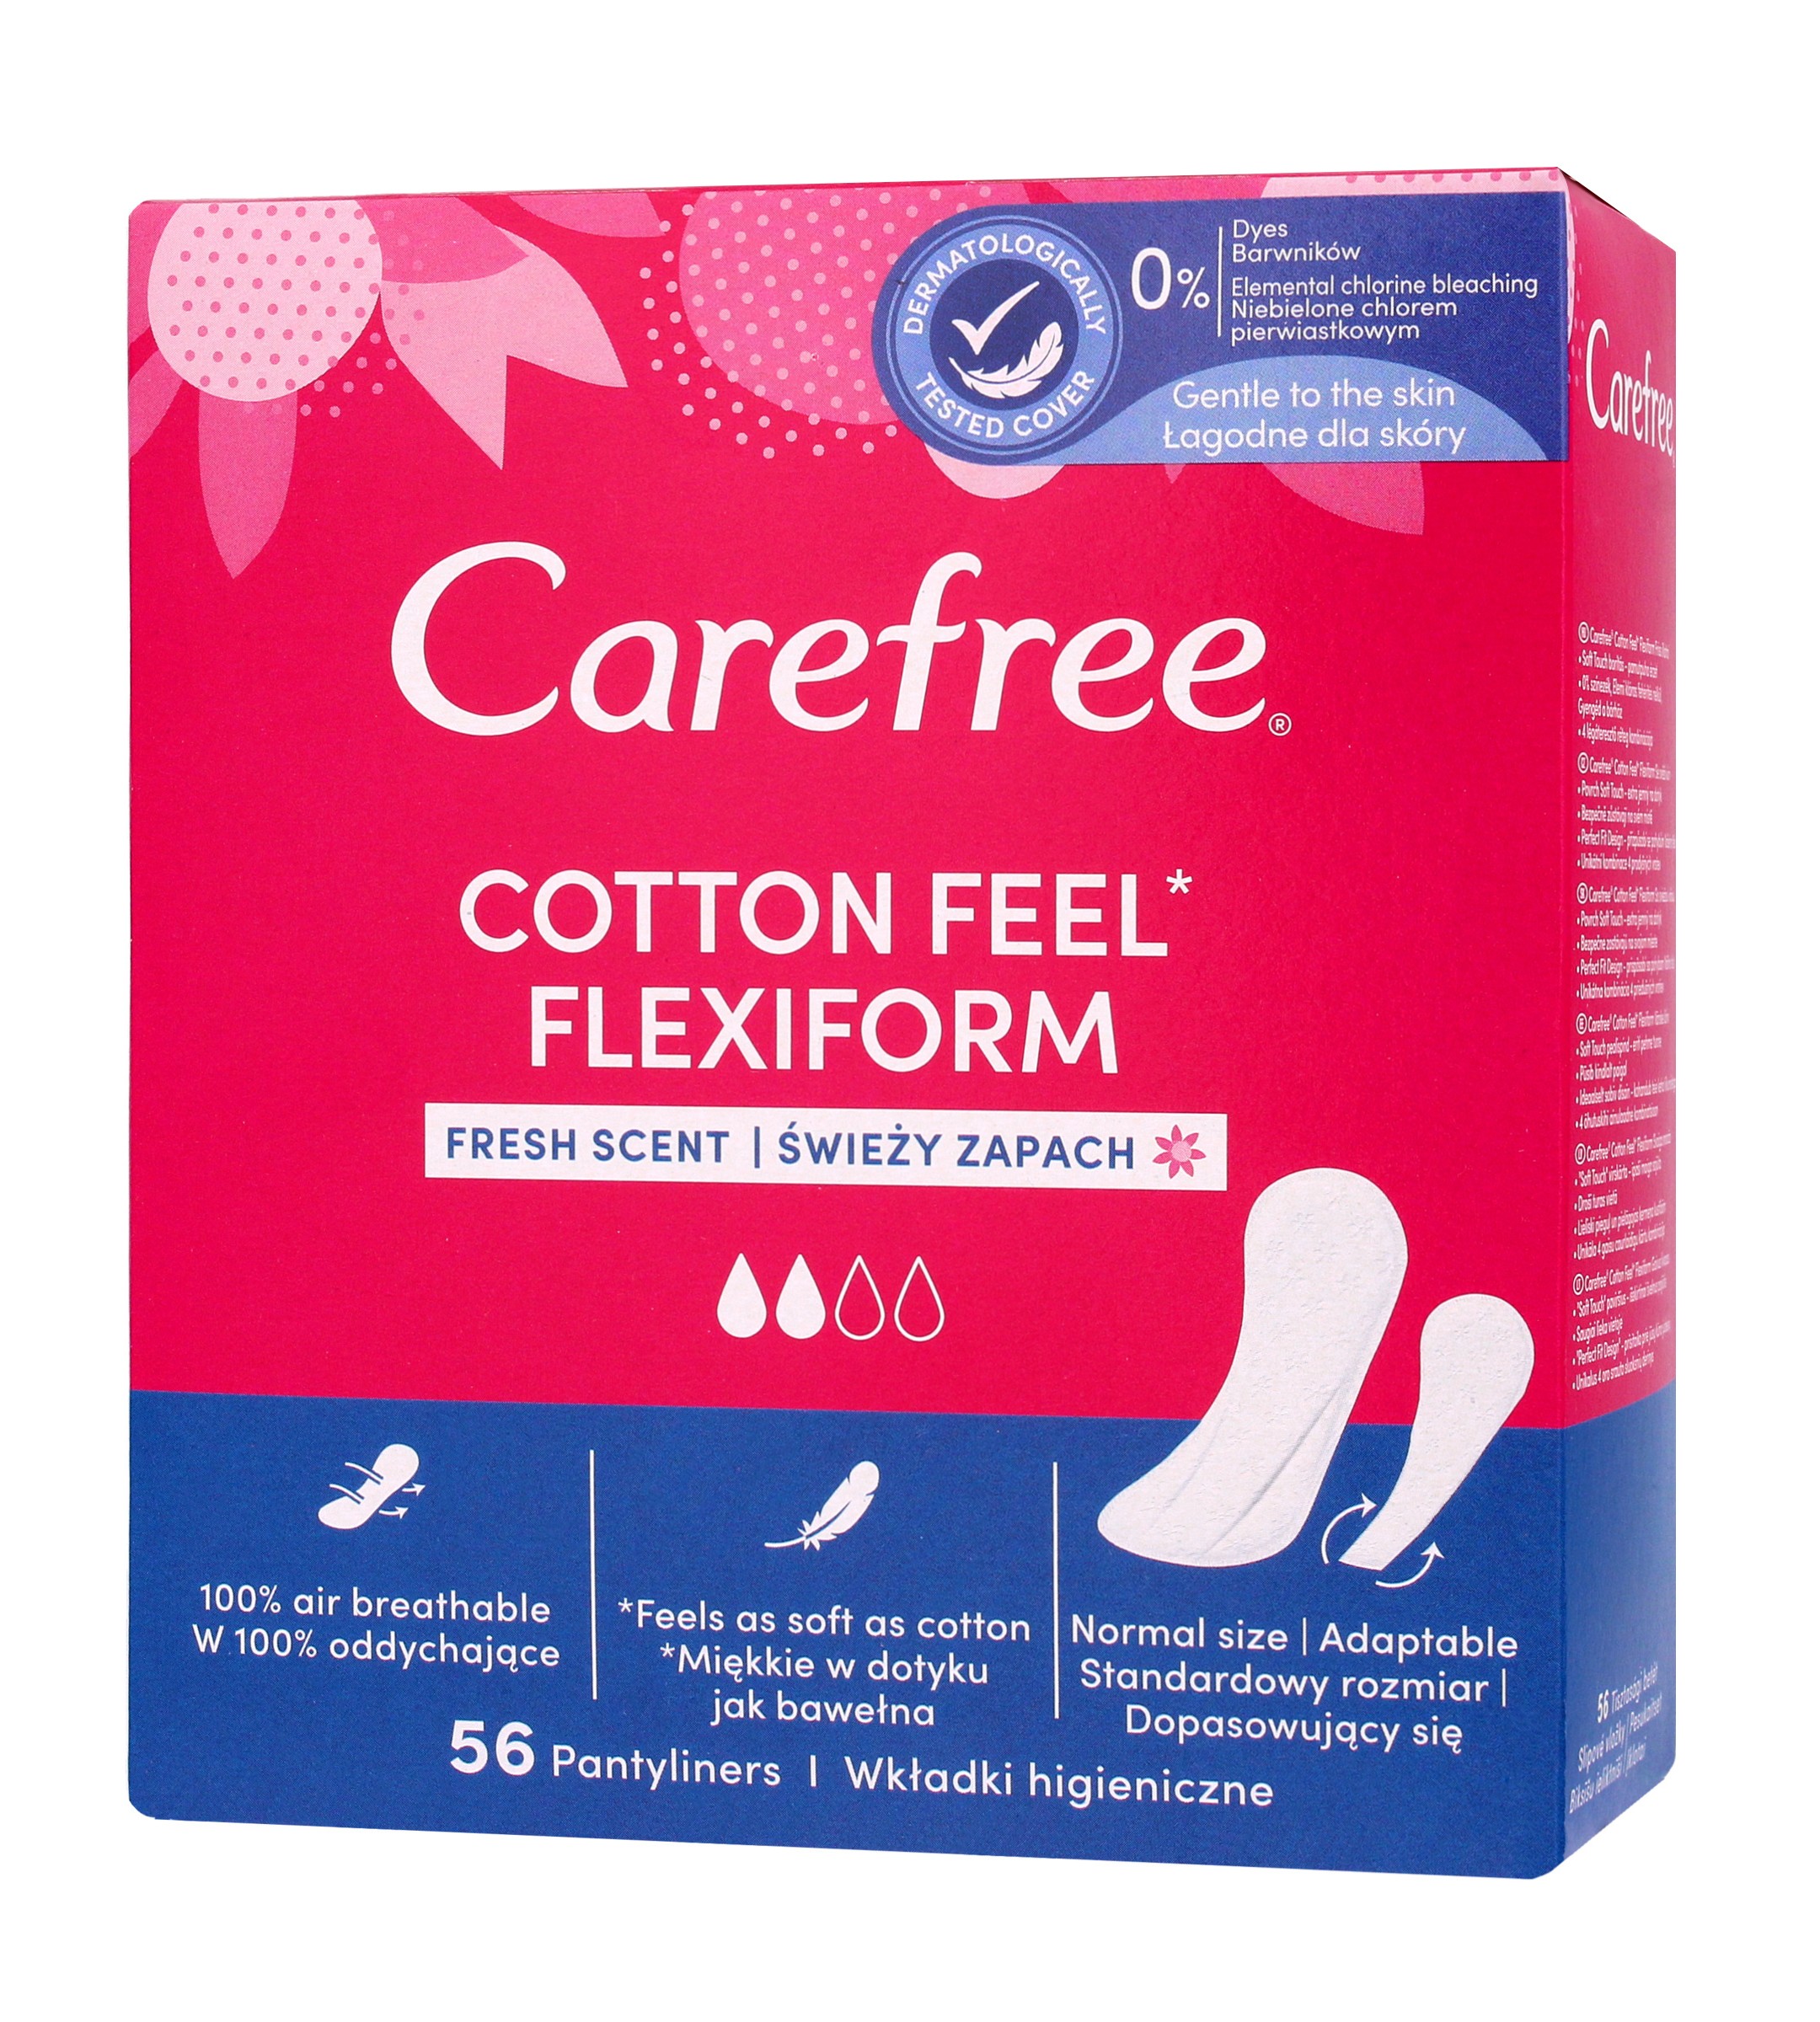 Carefree Cotton Flexiform Wkładki higieniczne Fresh Scent - świeży zapach 1op.-56szt